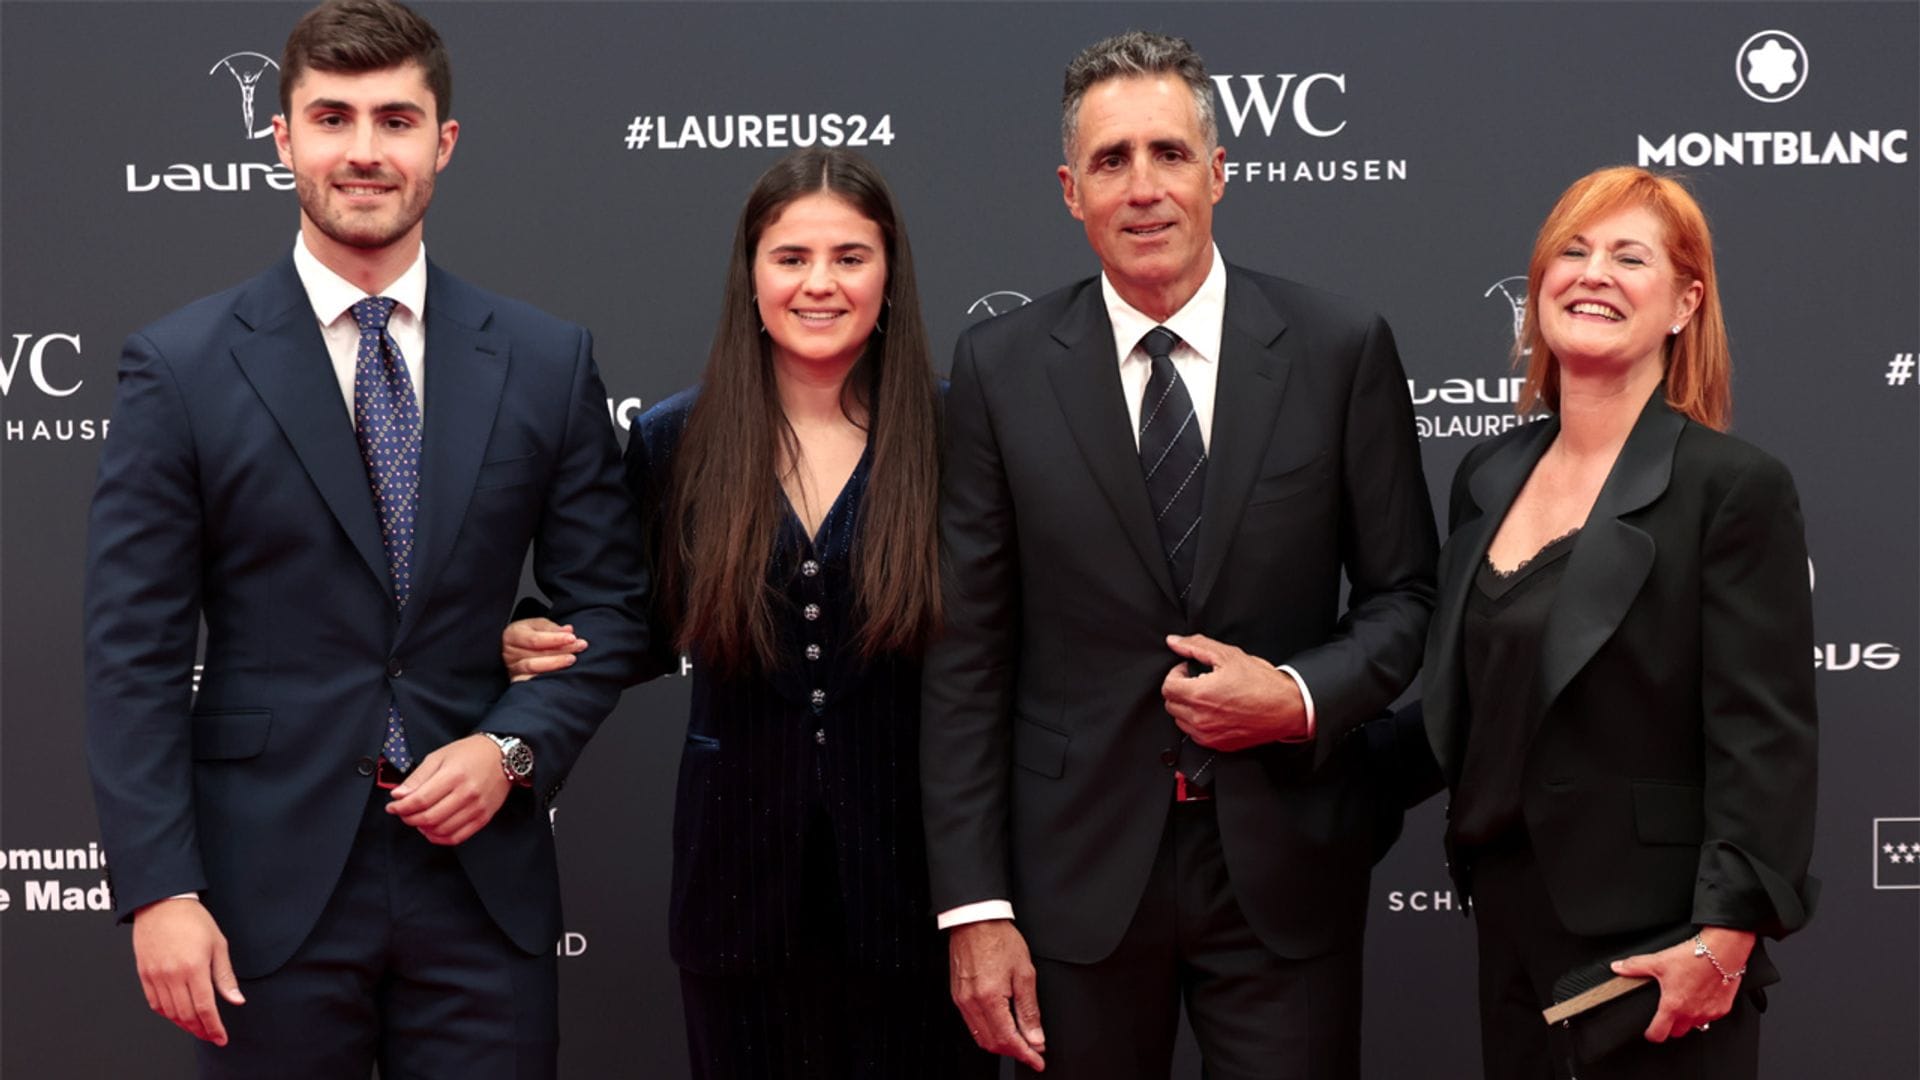 Miguel Indurain presume de familia, su mujer Marisa y sus hijos Jon y Ana, en los Oscar del deporte